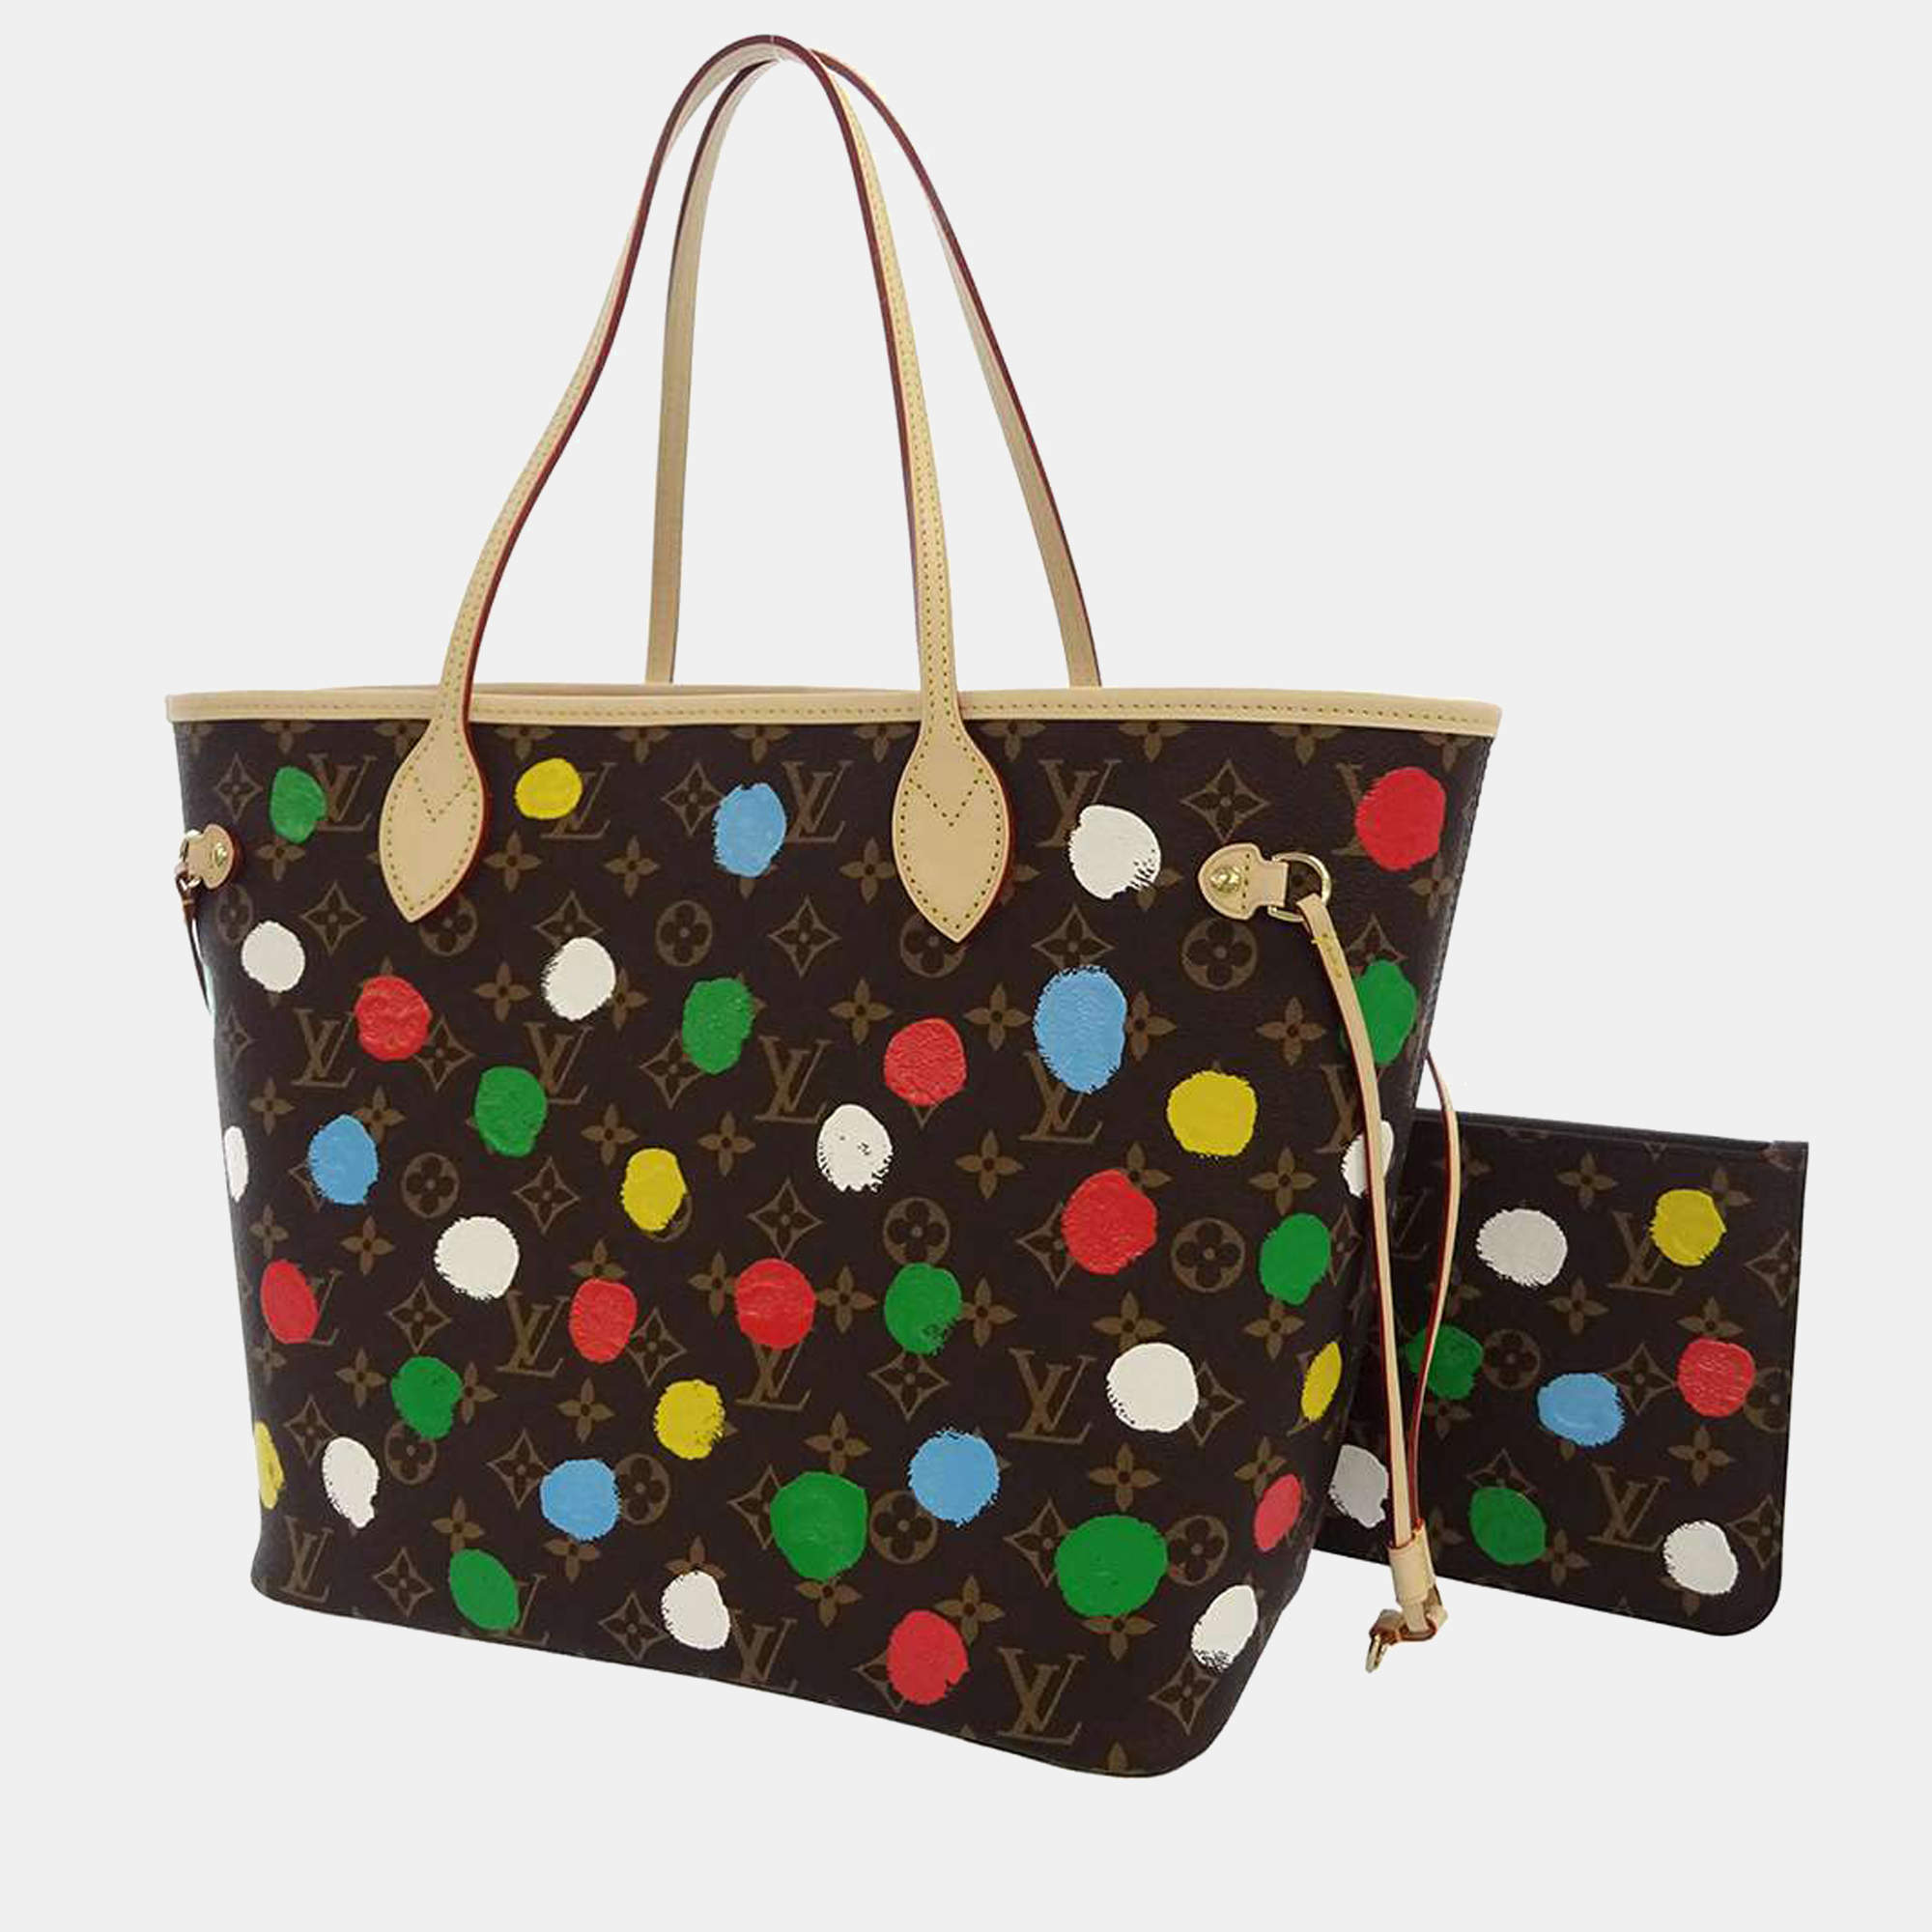 Louis Vuitton Monogram Patent Jungle Dots Bag Collection